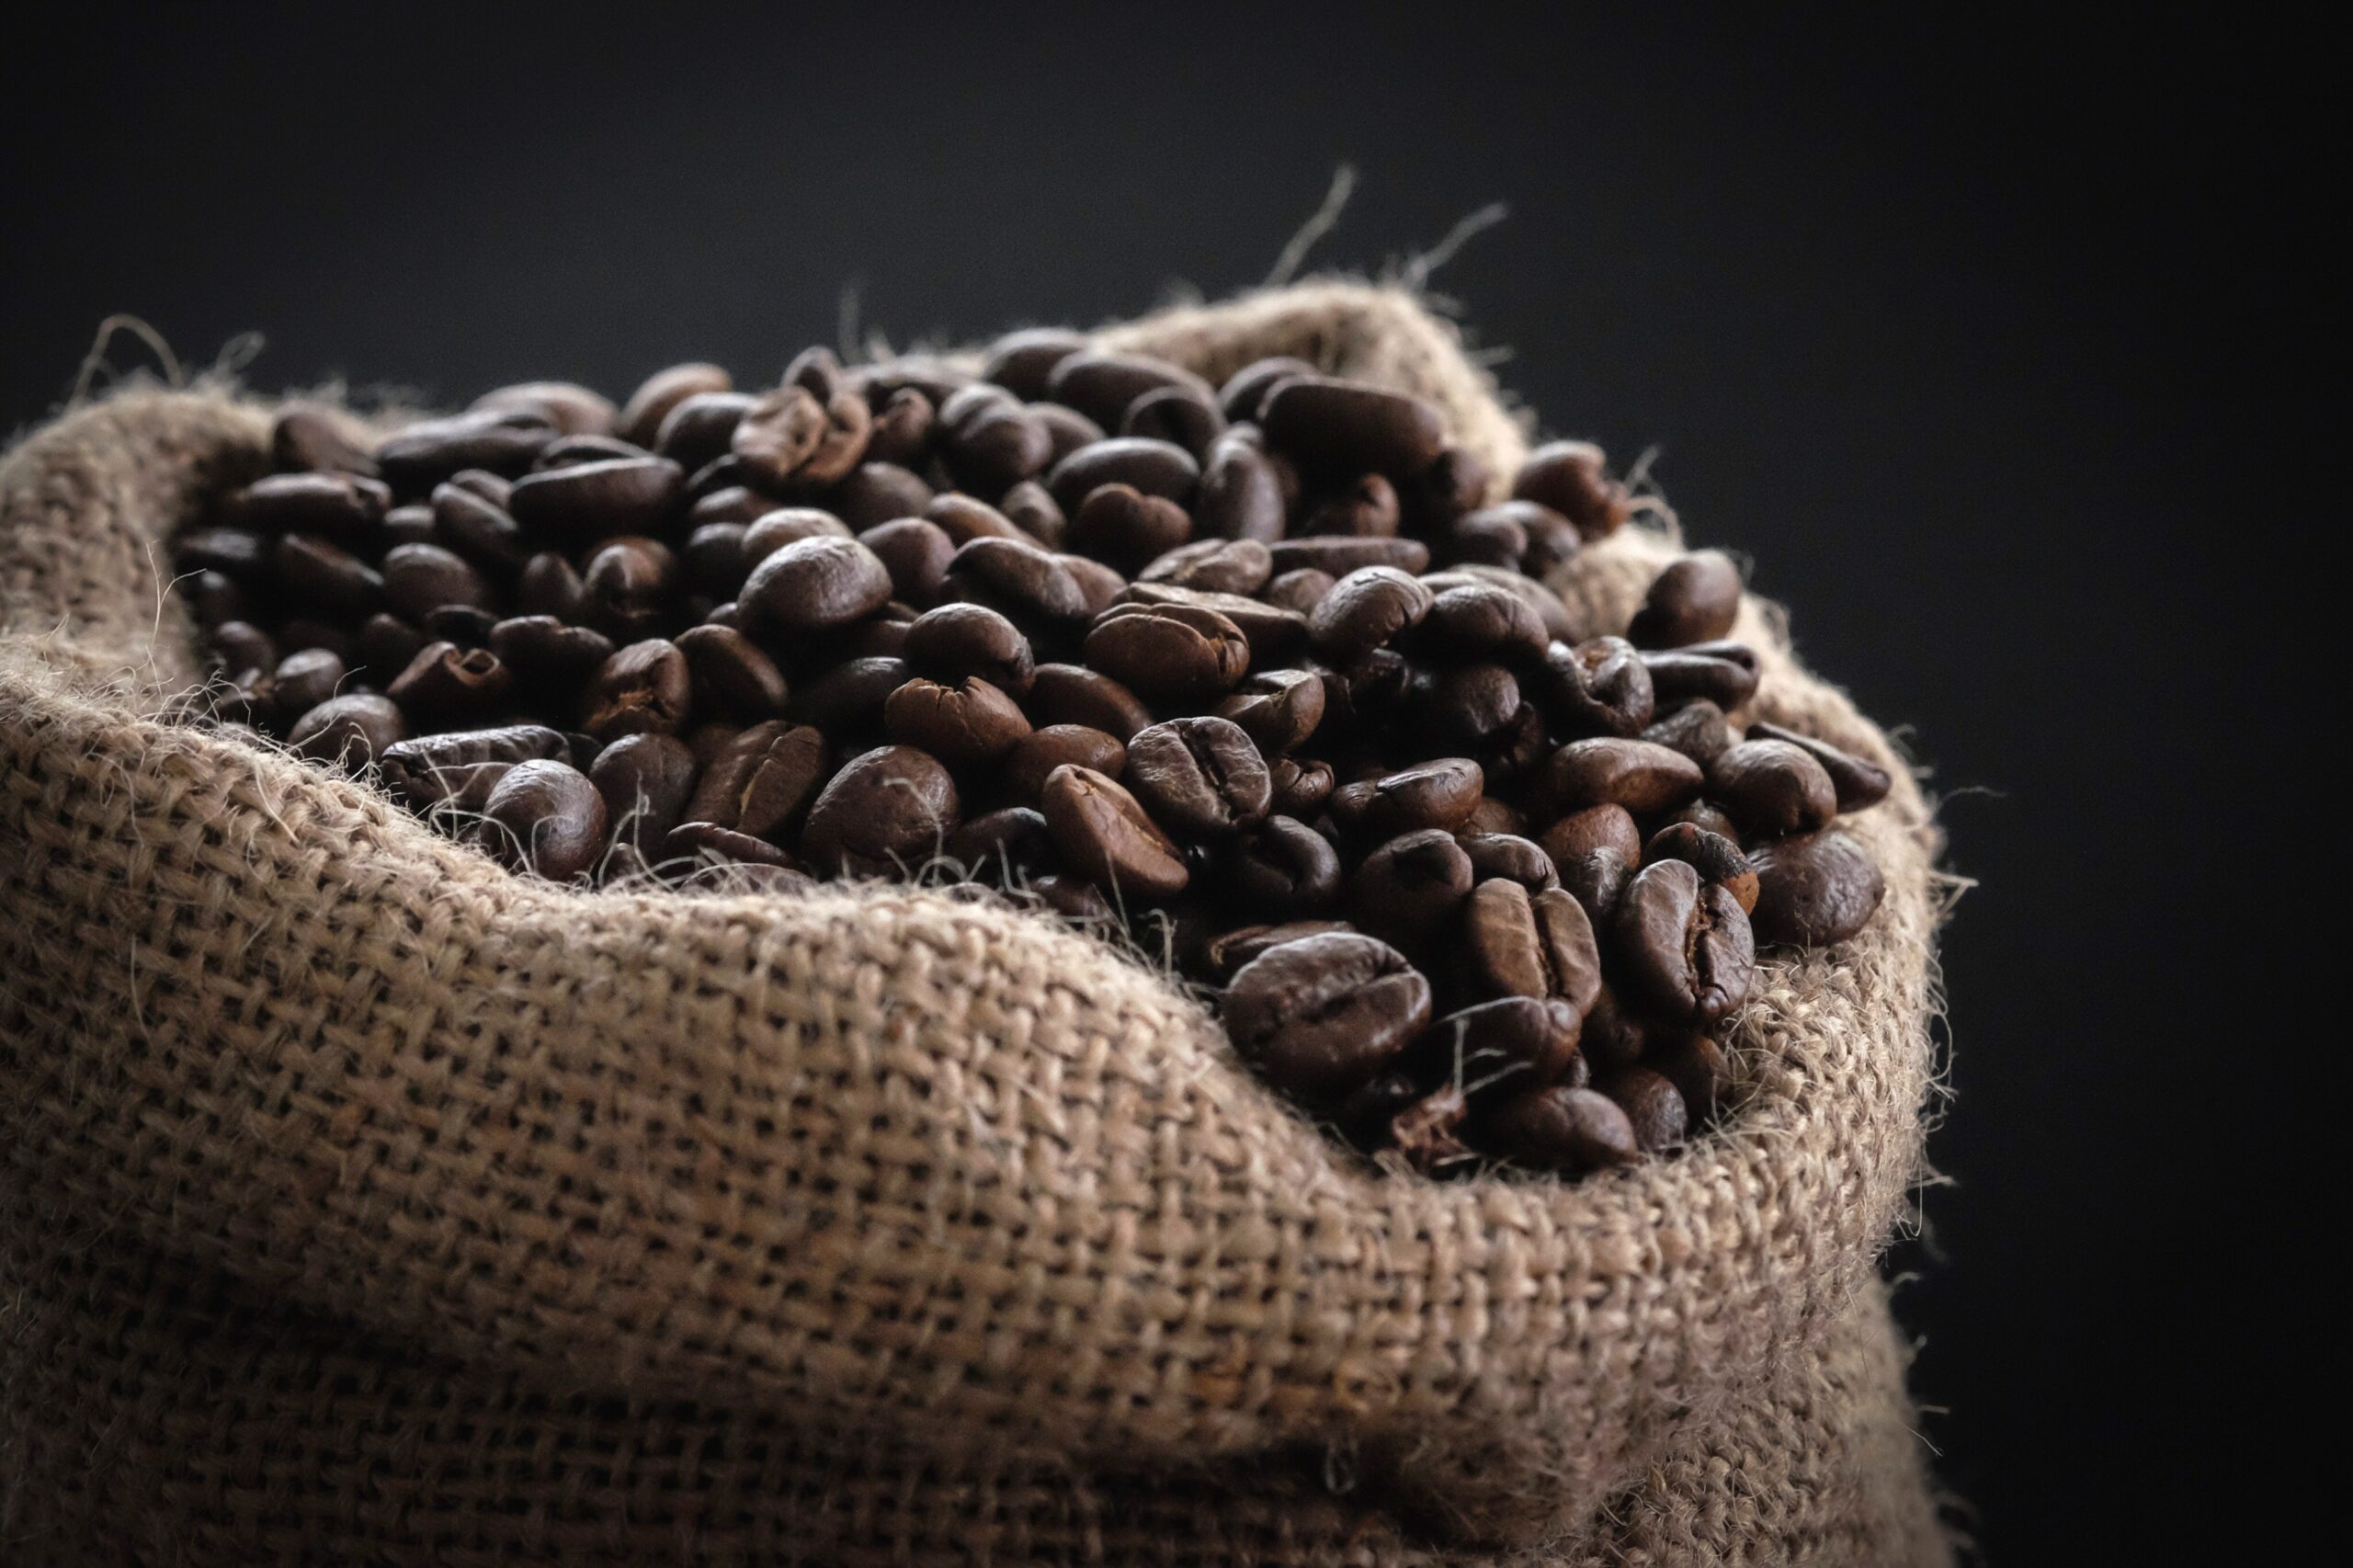 Découvrez les 5 meilleurs cafés au monde - Le blog Javry Coffee